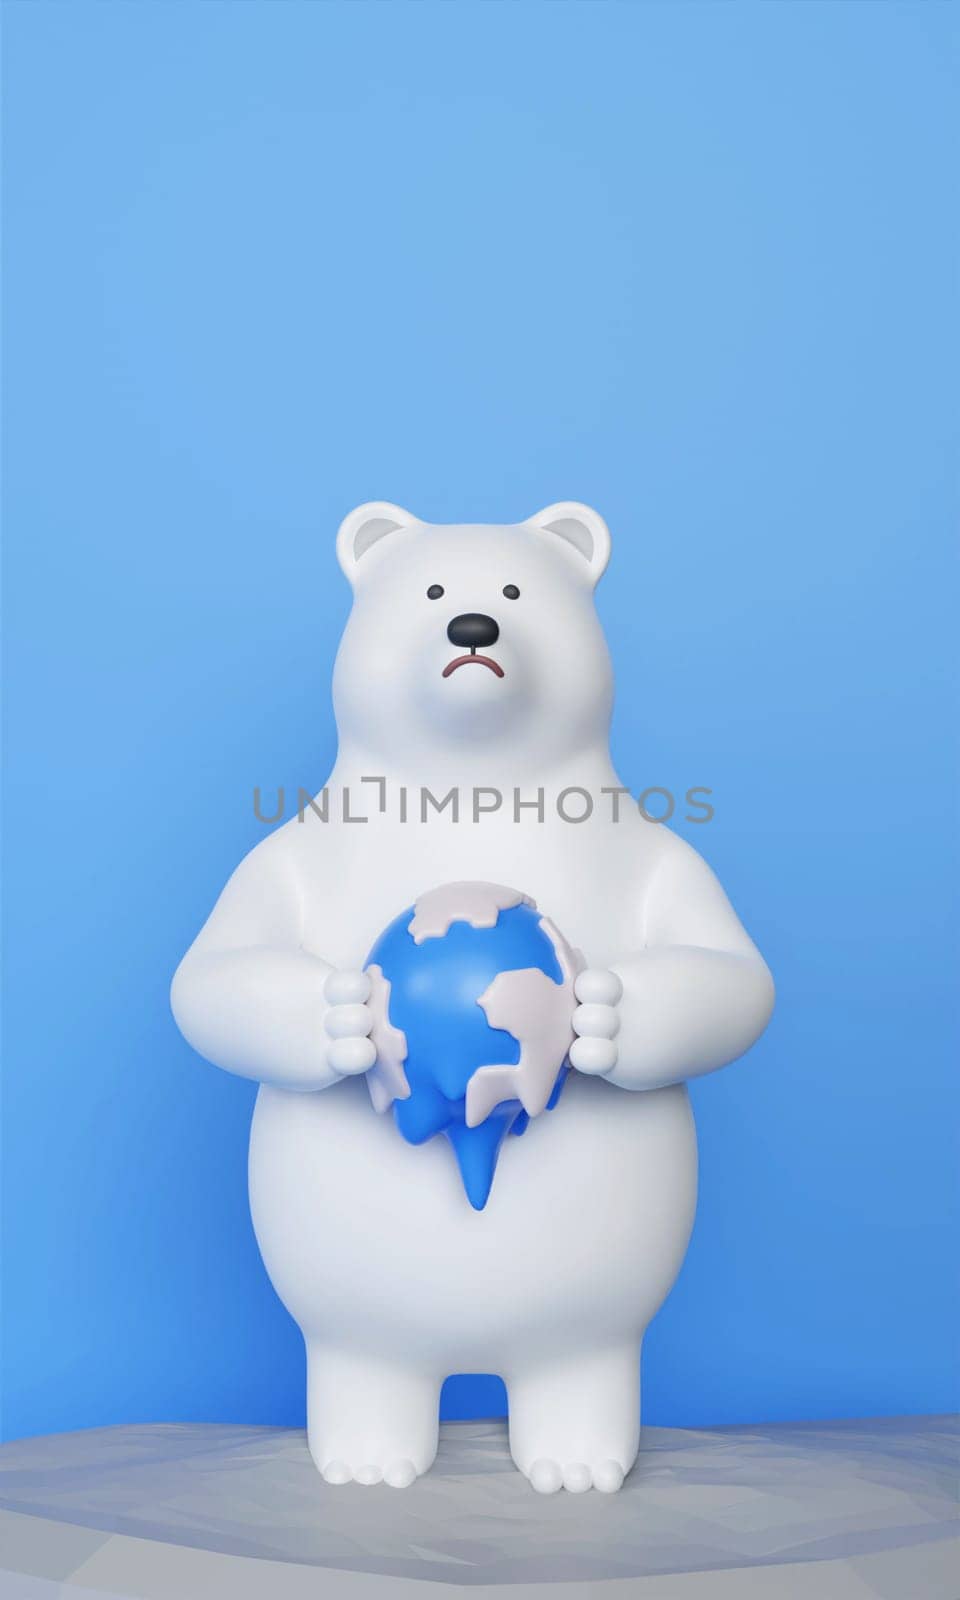 3d Baer hold melt planet. Global warming problem concept. melting polar ice problem. save the planet. 3d rendering illustration..